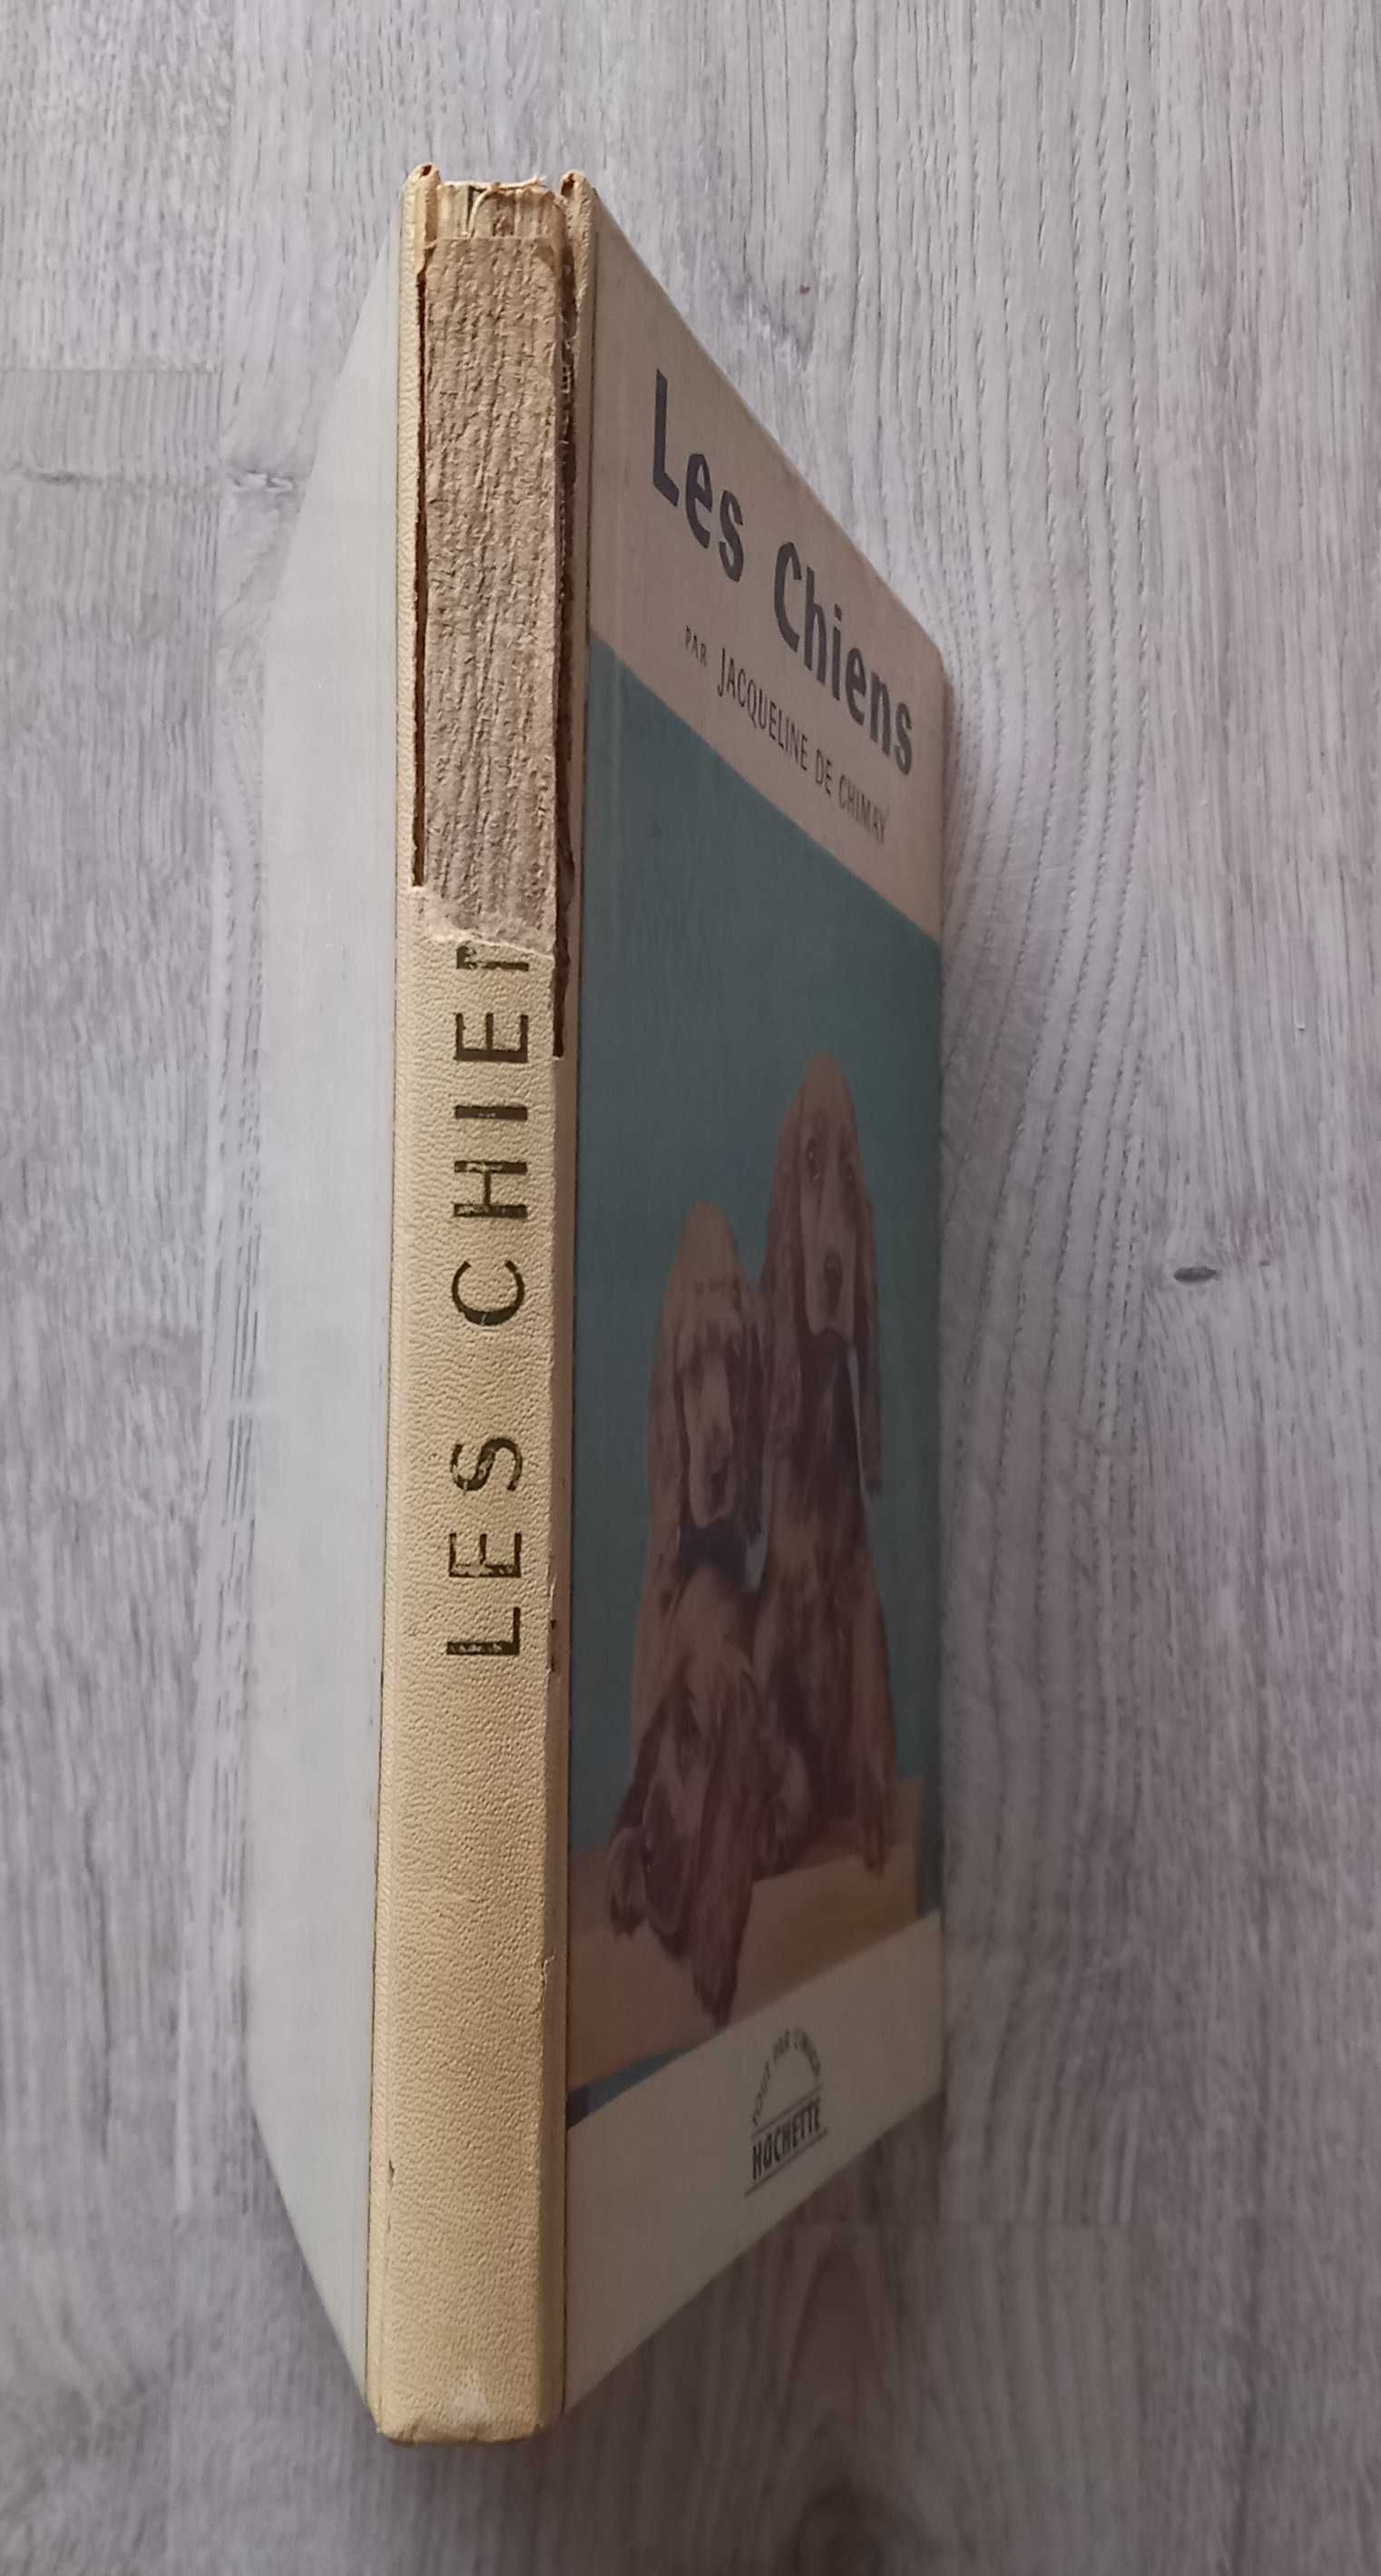 Jacqueline de Chimay- Les Chiens [Hachette]